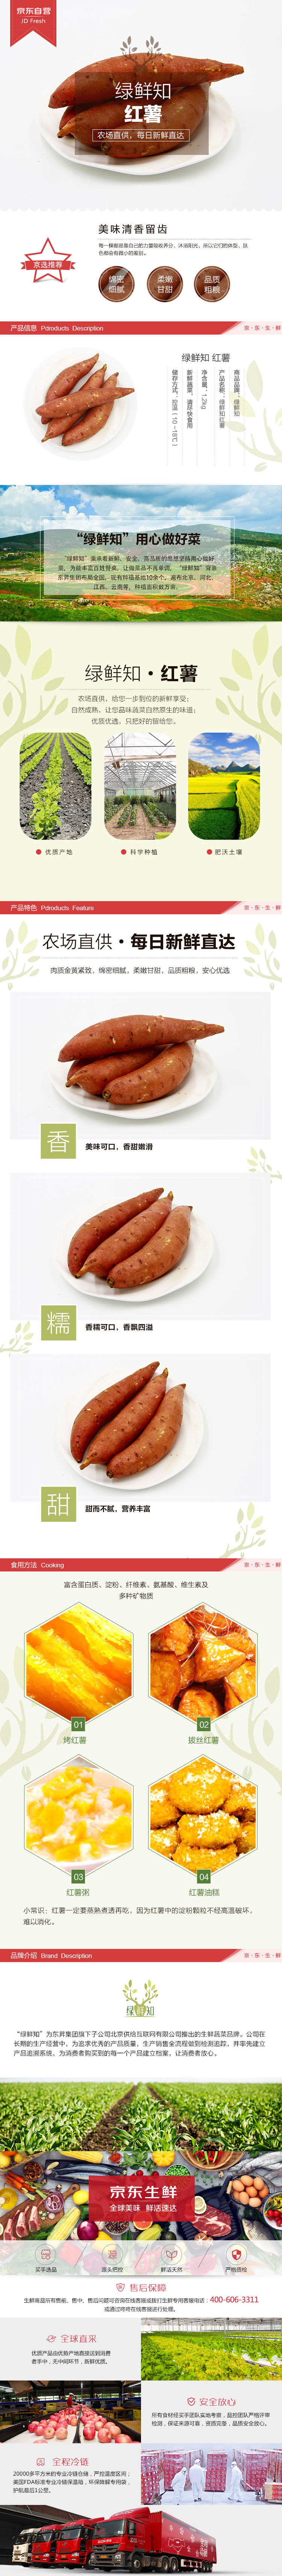 绿鲜知 红薯 约1200g  火锅涮菜 新鲜蔬菜-京东